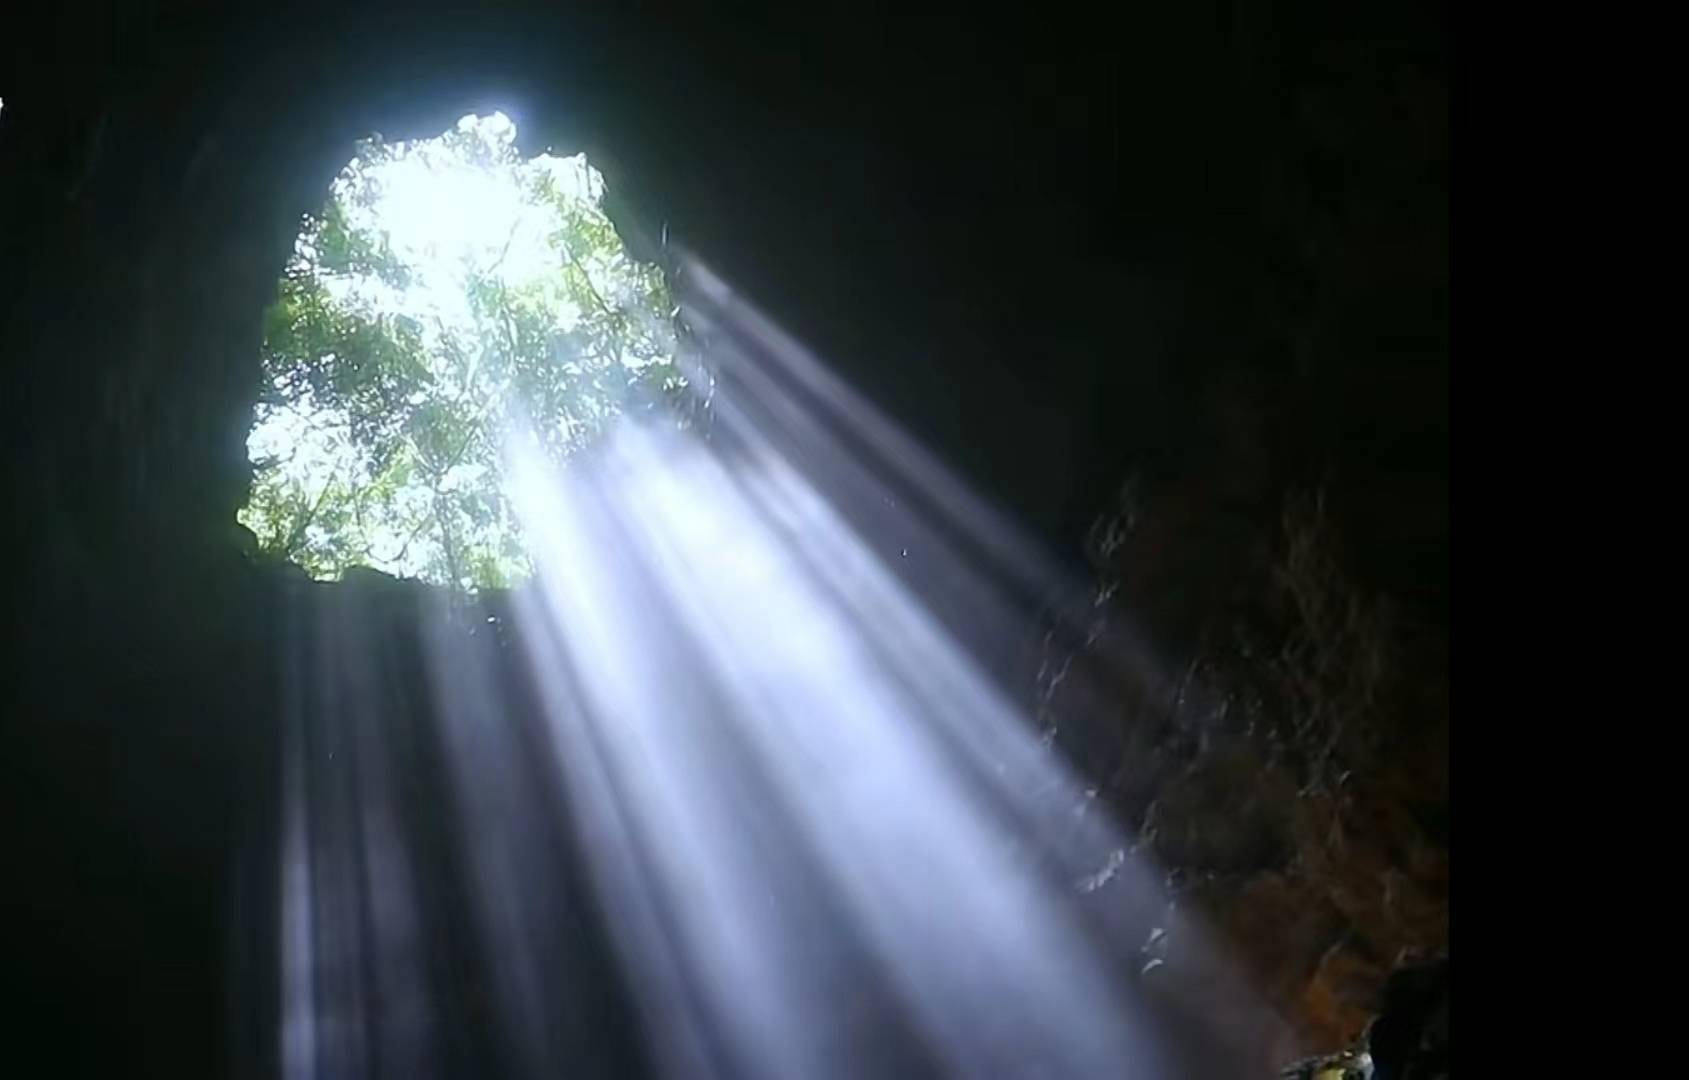 武隆神秘洞穴现丁达尔奇观,光如瀑布倾泻而下